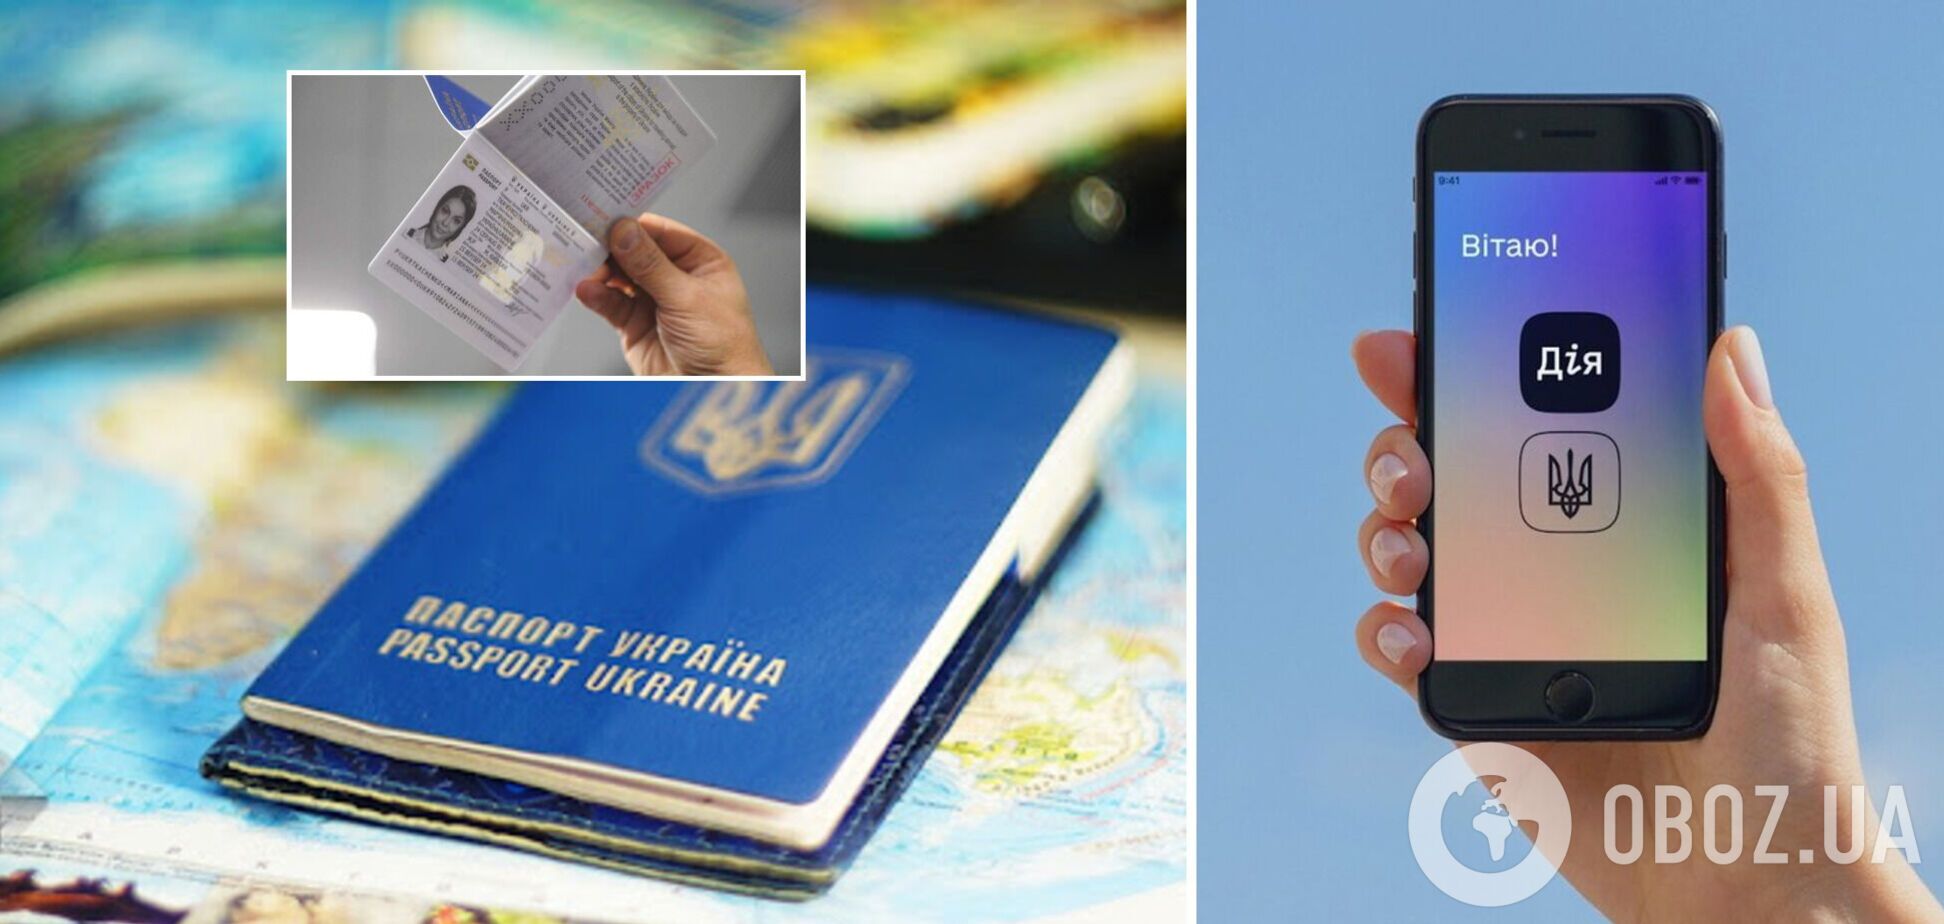 В Дії будут отображаться небиометрические заграничные паспорта: что нужно знать